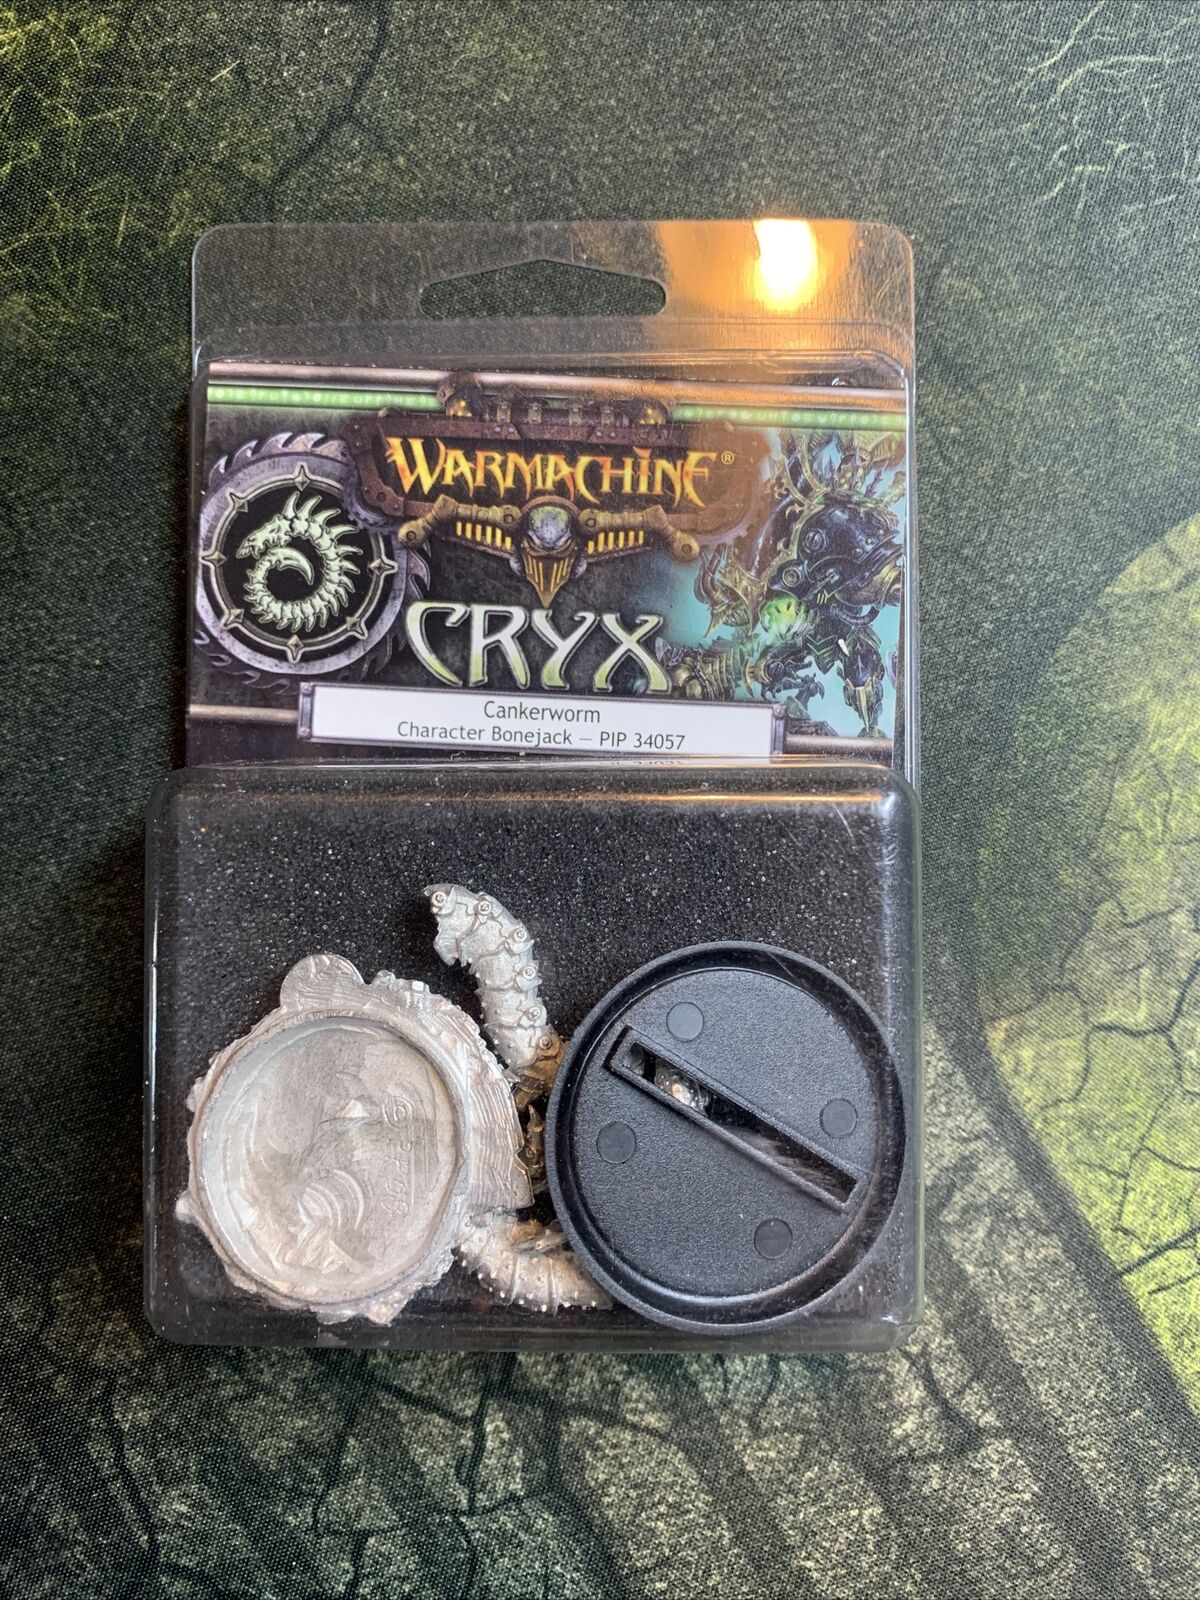 Cryx - Cankerworm Bonejack (pip 34057) New Warmachine